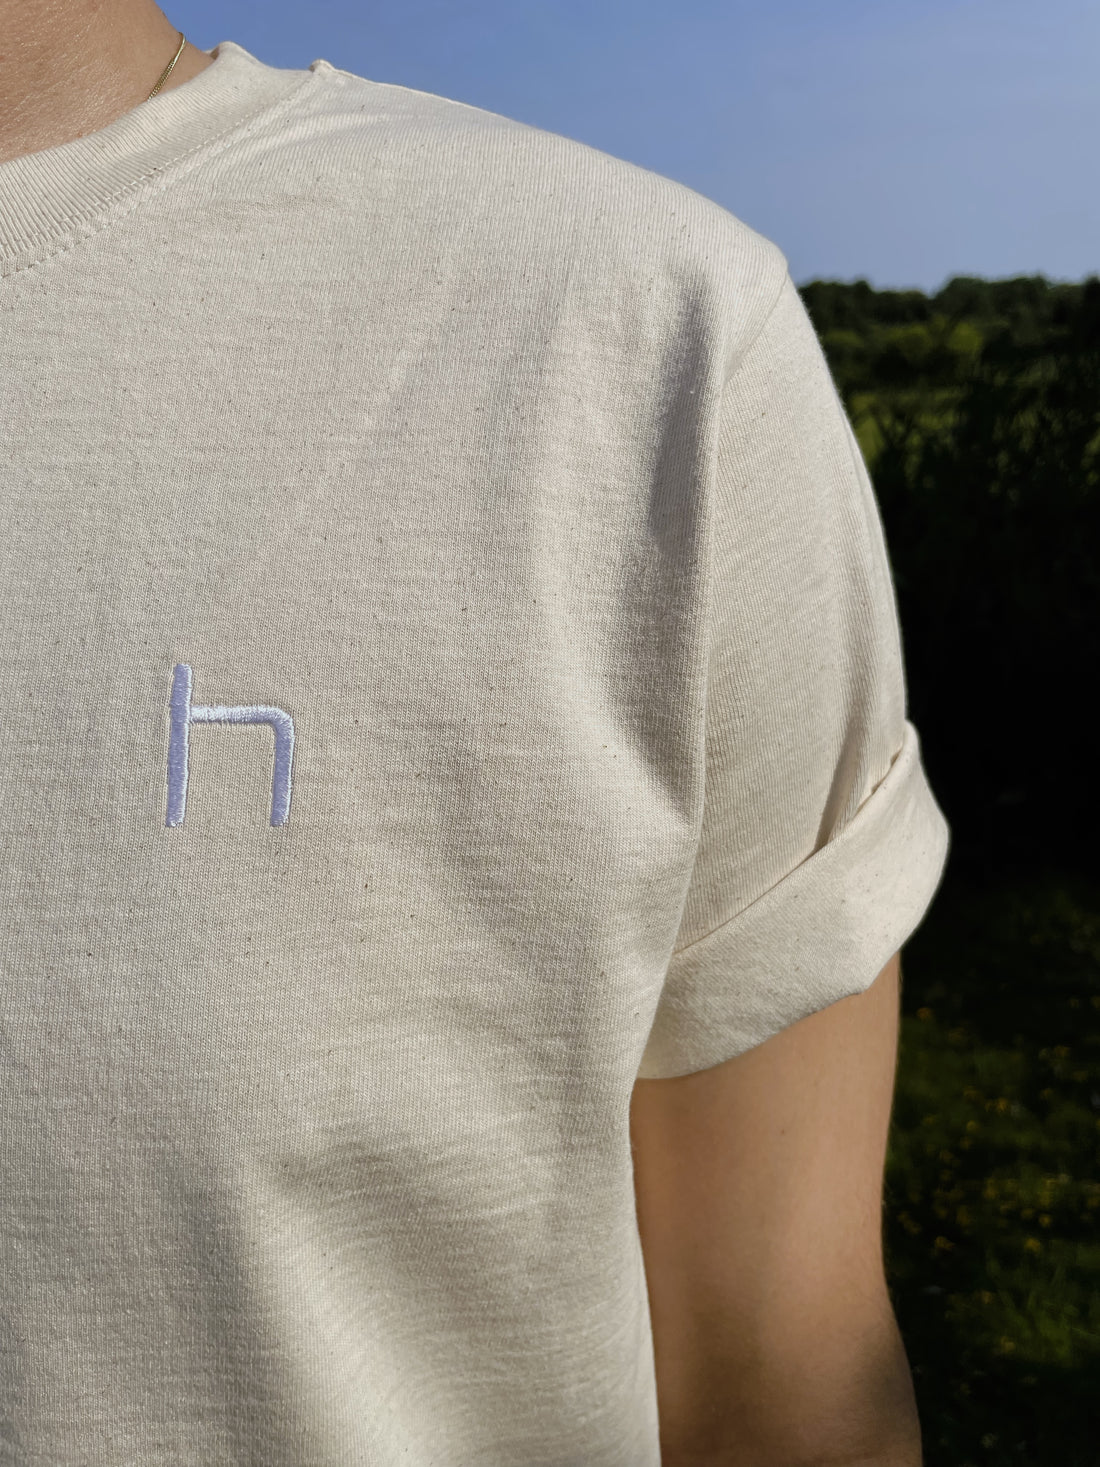 heinsa T-Shirt aus Biobaumwolle mit Strick und Siebdruck